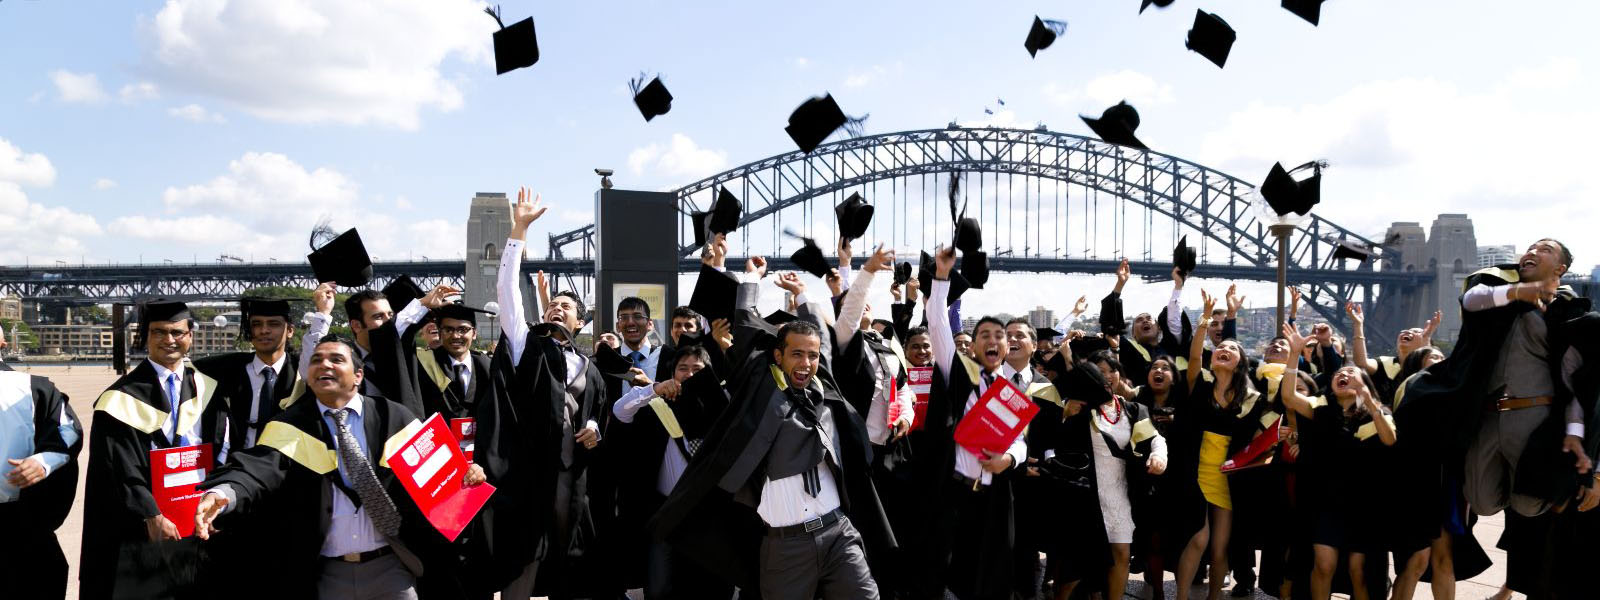 Hệ thống và Chất lượng Giáo dục, Khoa học Công nghệ Úc luôn luôn TOP đầu Thế giới